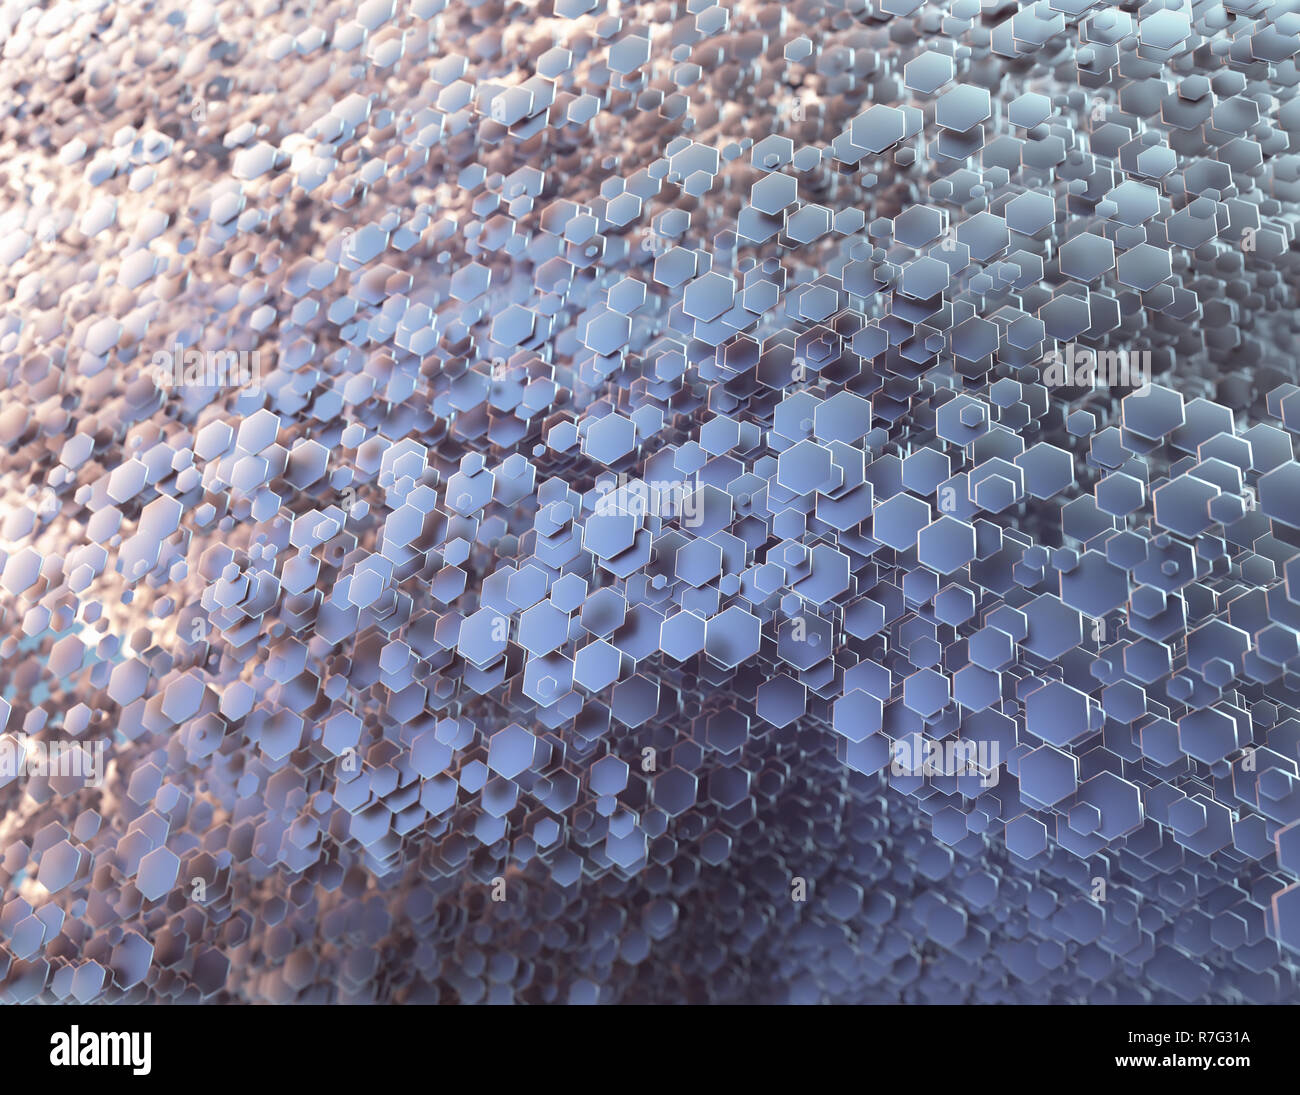 Abstract immagine poligonale con luci e ombre distribuiti casualmente. Tridimensionale forma a nido d'ape. 3D'illustrazione. Sfondo colorato. Foto Stock